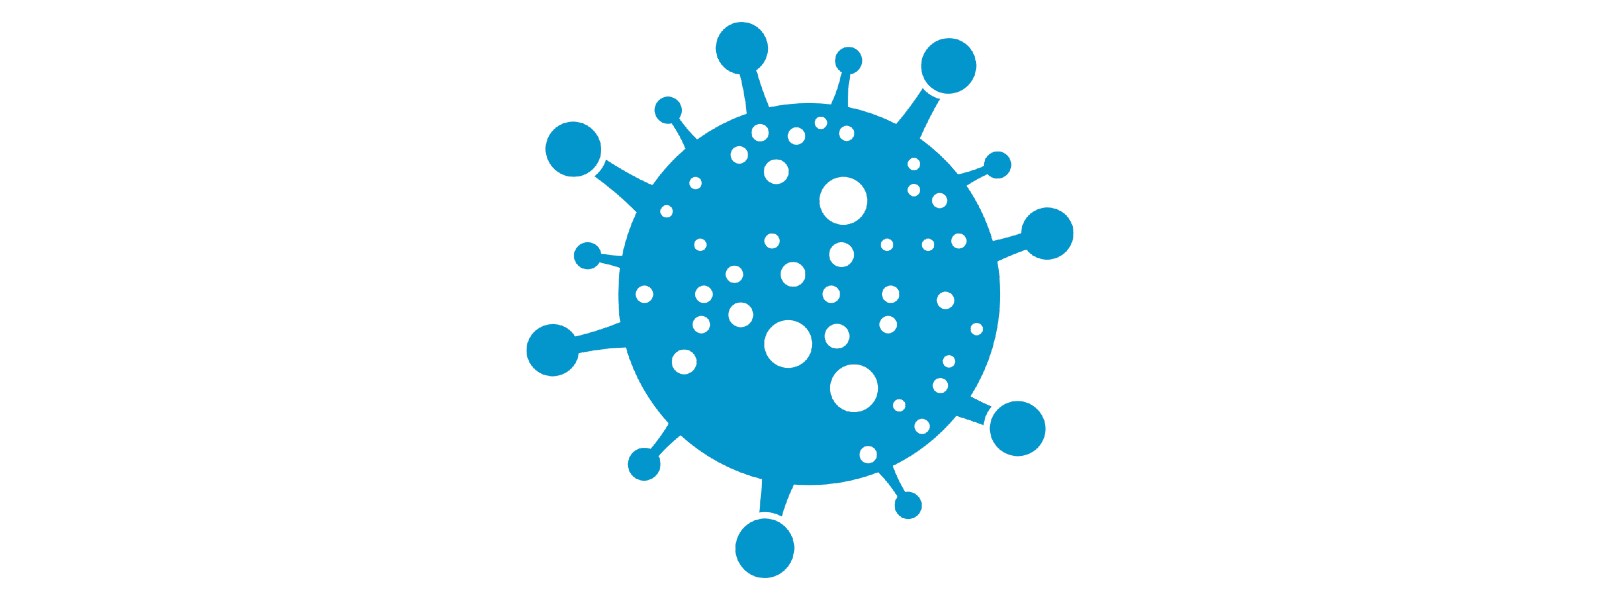 WHO monitoring new coronavirus variant named ‘Mu’